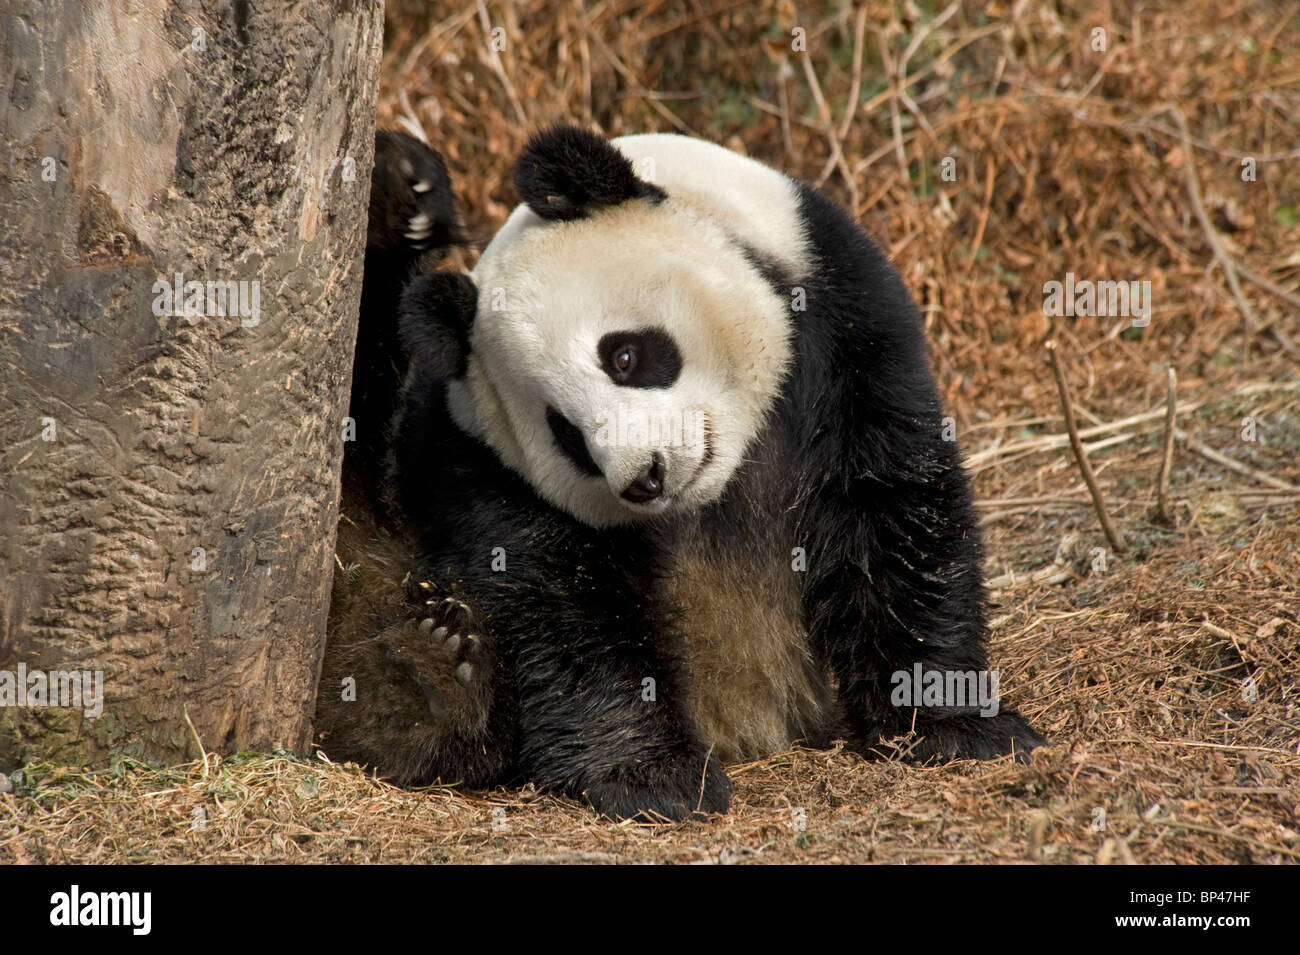 Panda gigante arañazos cabeza con el pie trasero, rayones en el tronco del árbol de garras, Wolong en China Foto de stock